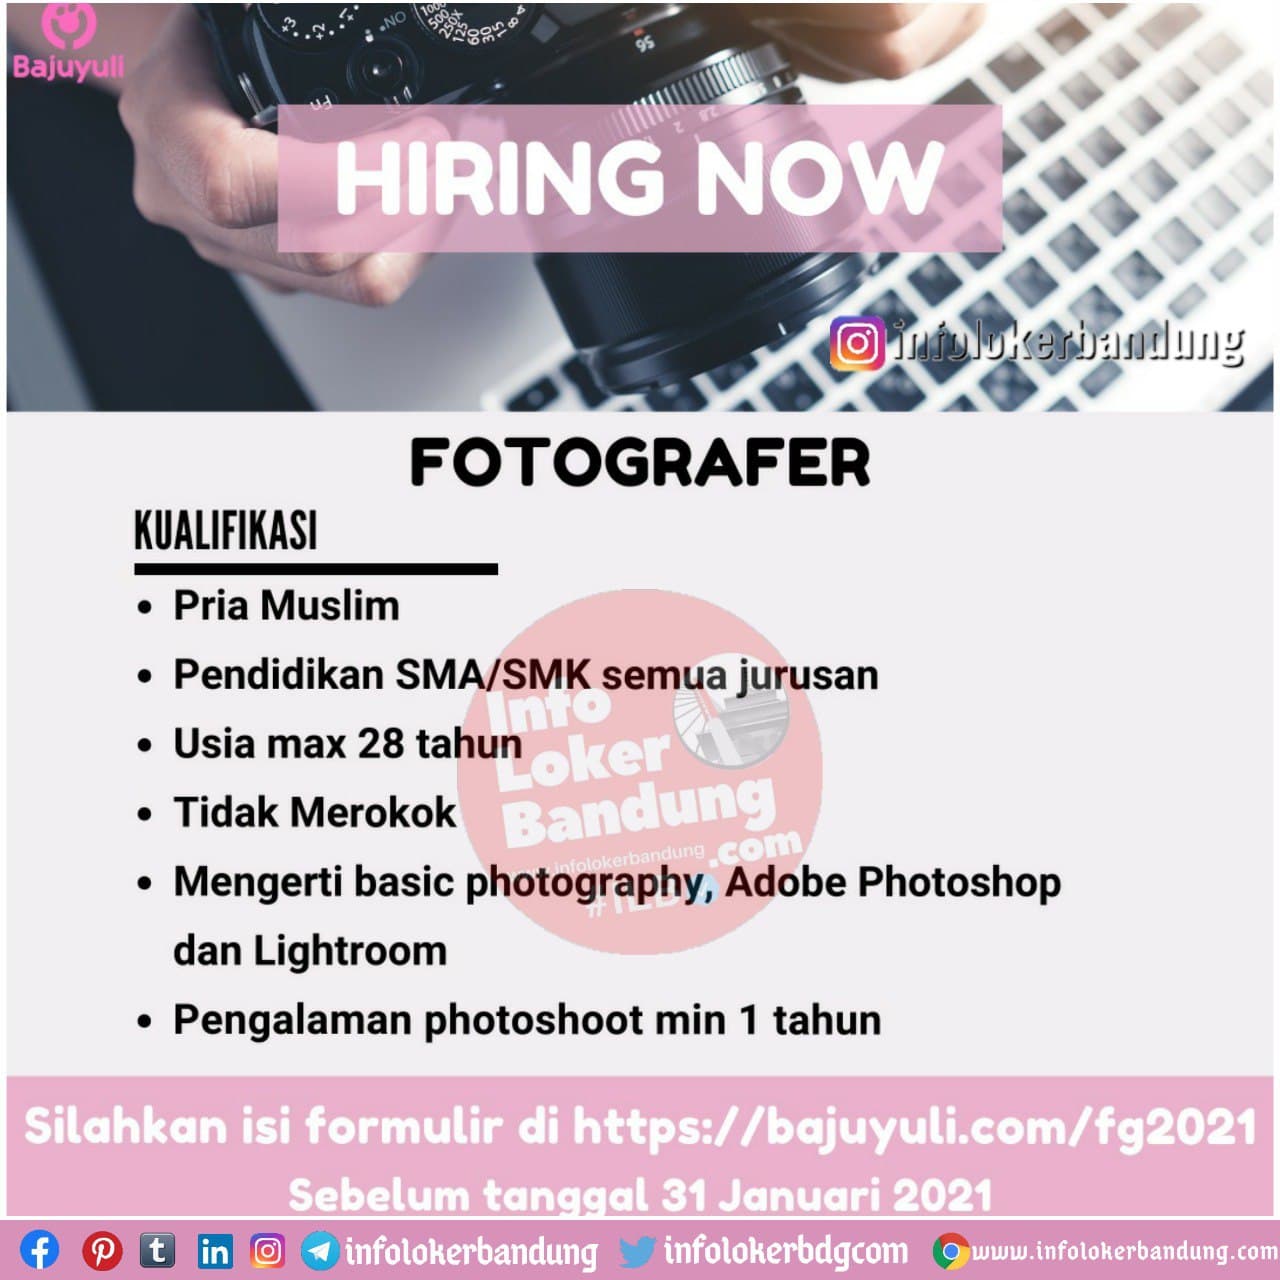 Lowongan Kerja Fotografer Bajuyuli Bandung Desember 2020